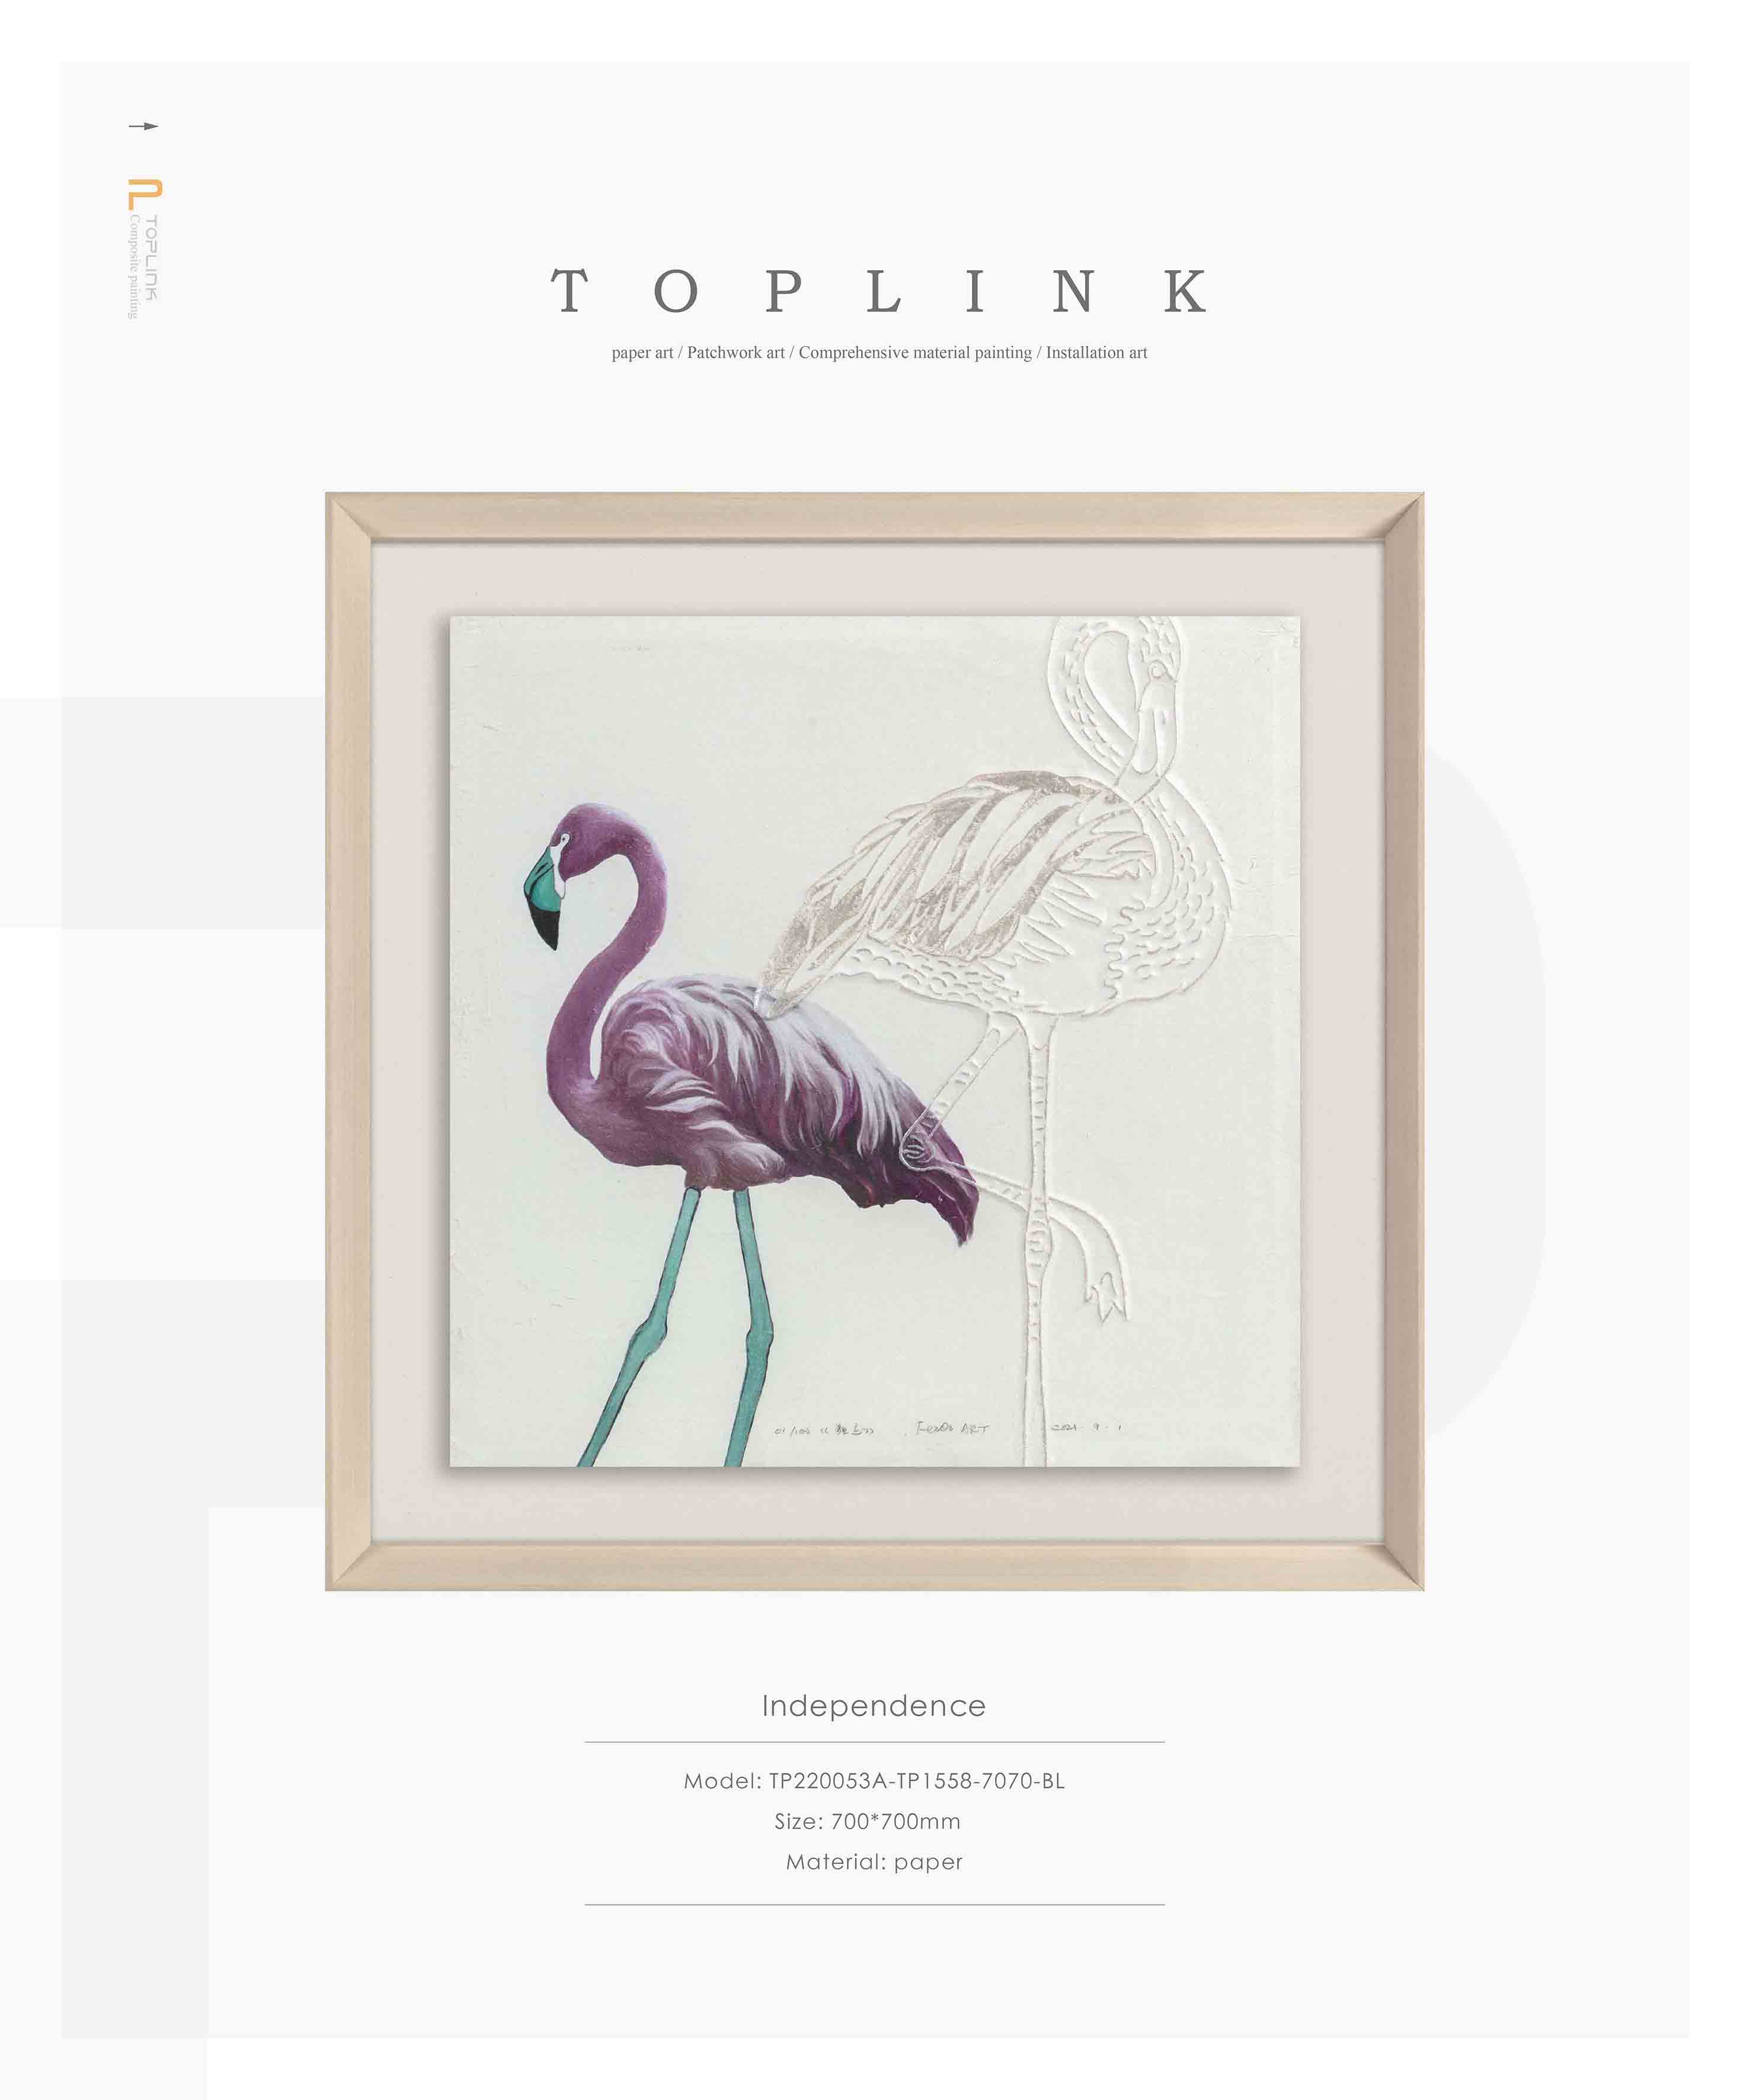 TOPLINK-Paper Art